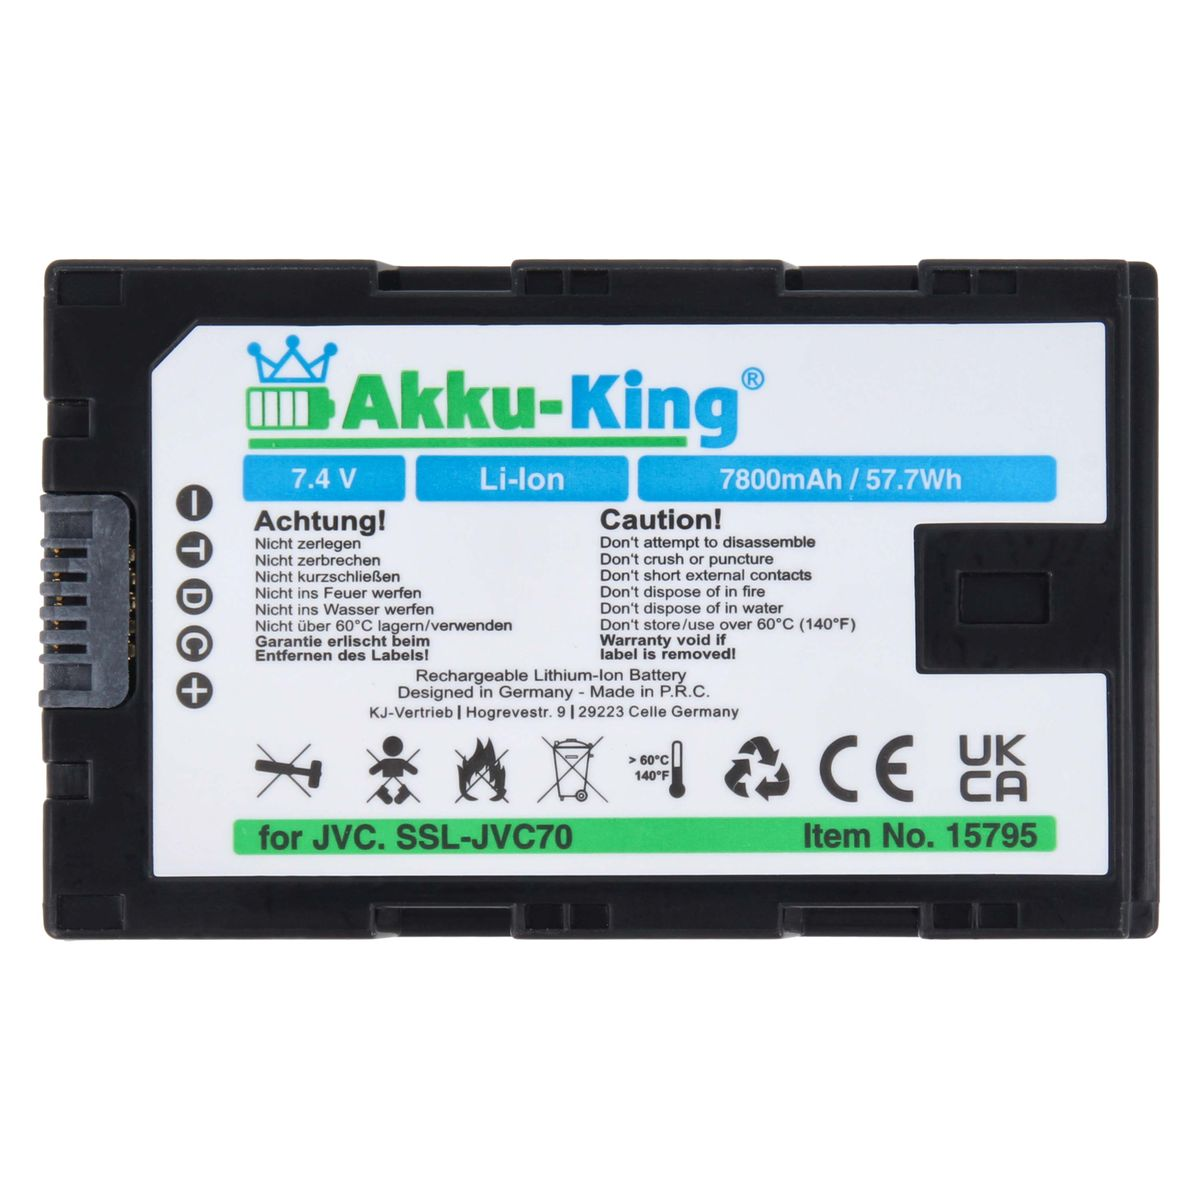 7.4 kompatibel Li-Ion Volt, SSL-JVC50 7800mAh Kamera-Akku, JVC mit AKKU-KING Akku